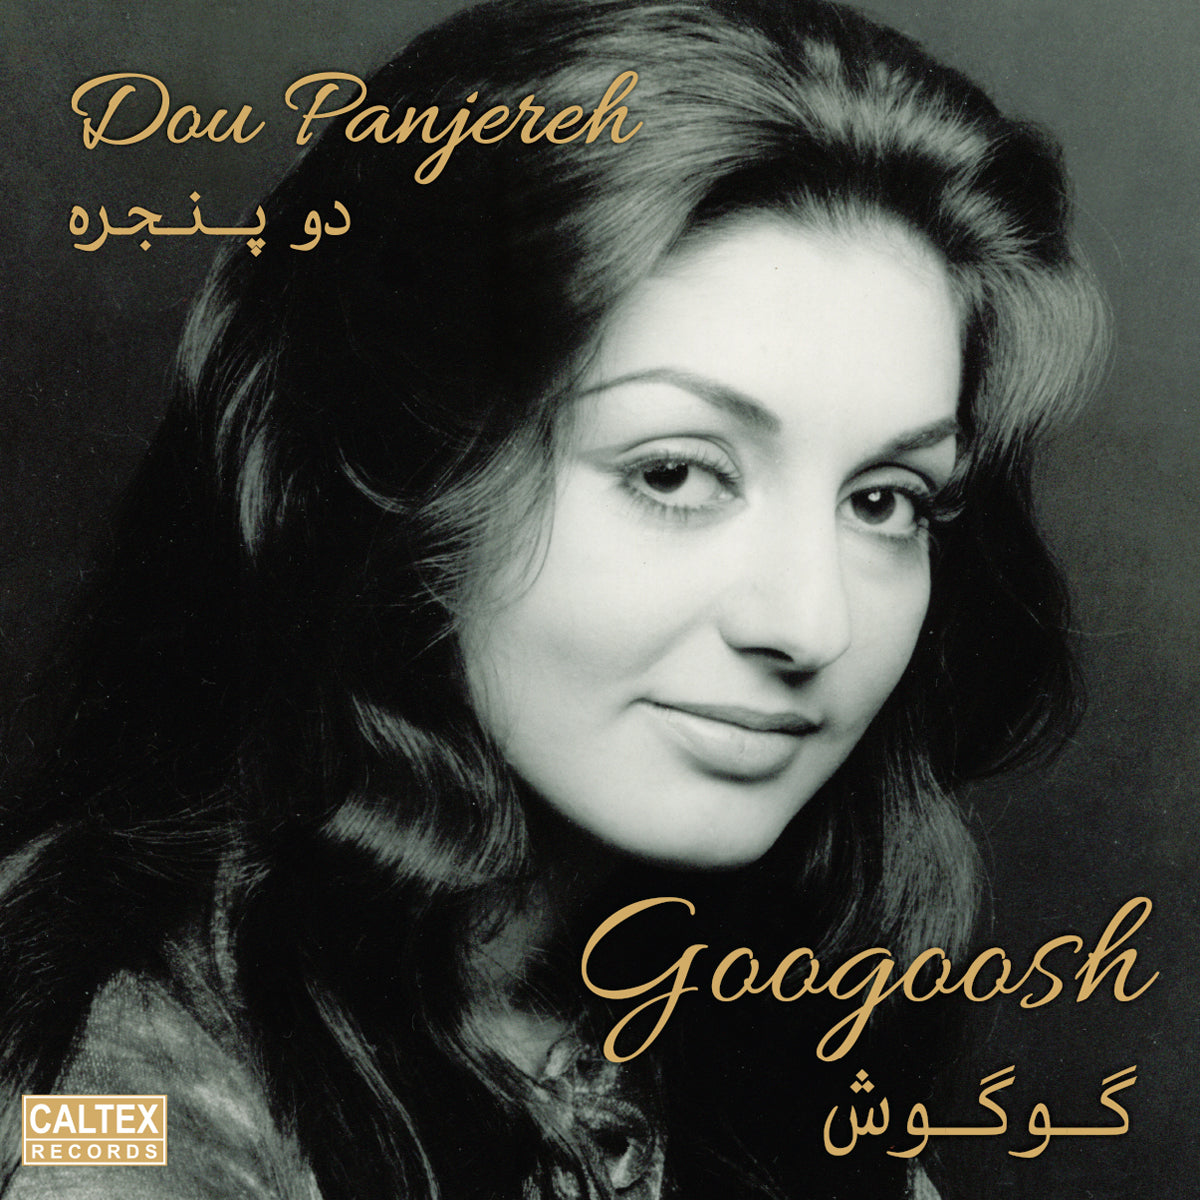 Googoosh - Dou Panjereh (Vinyl)